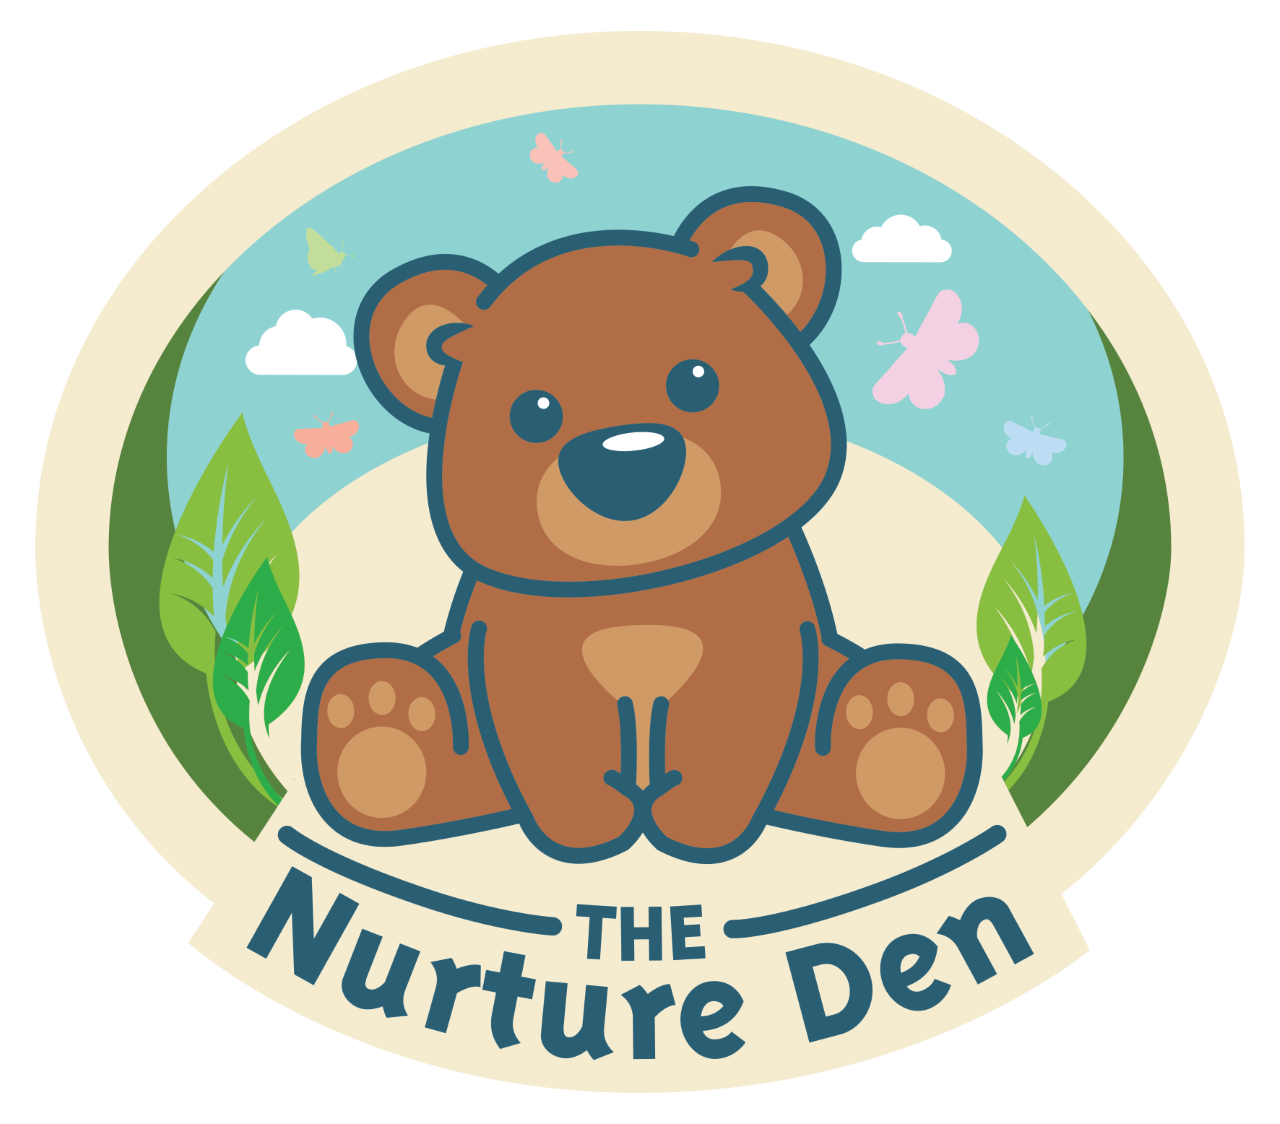 The Nurture Den